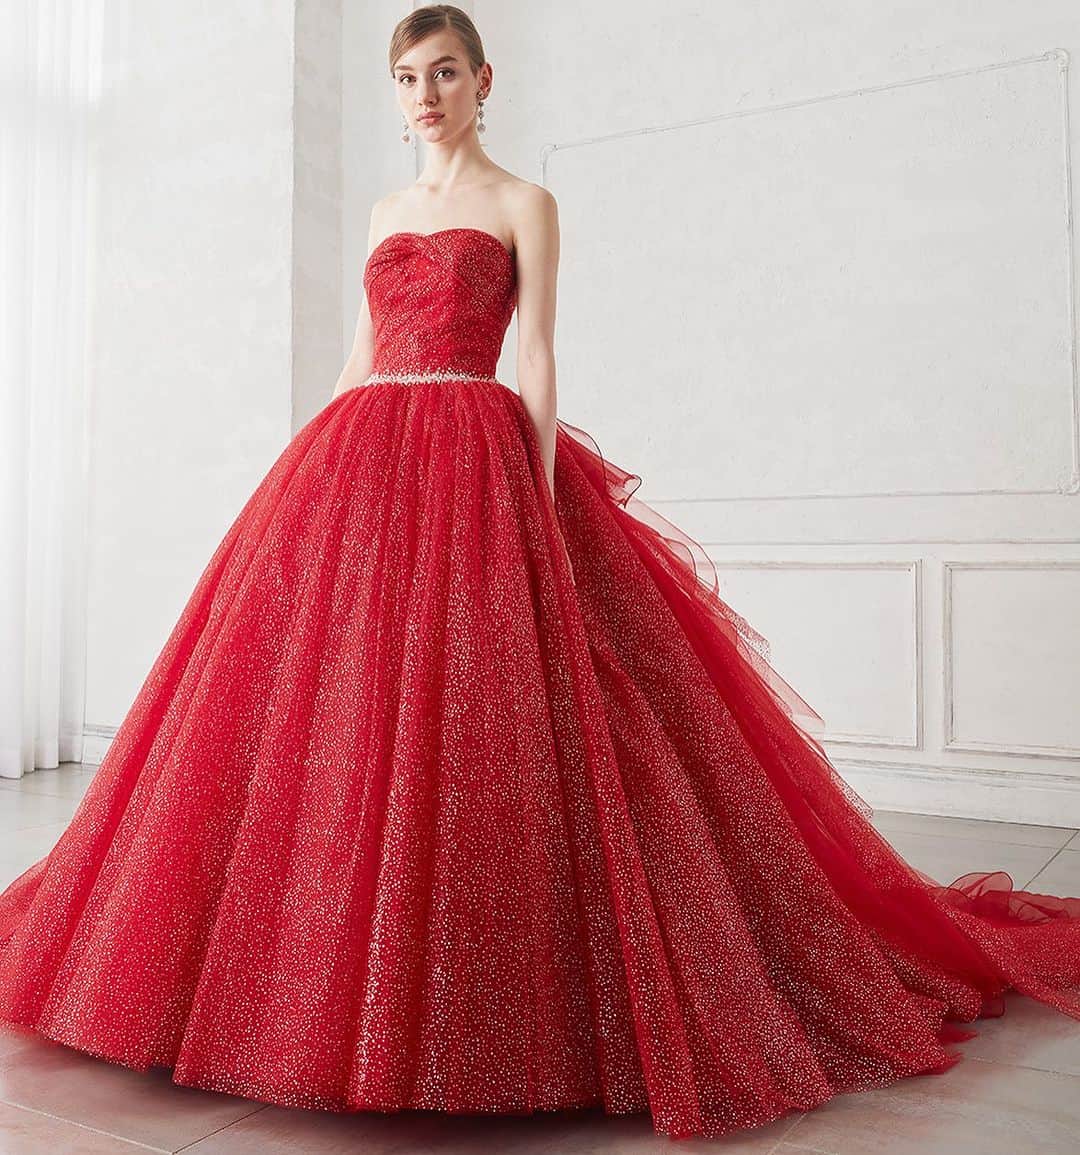 fino_wedding【フィーノ公式】のインスタグラム：「🍀スタッフお薦め🍀  IC-126 #赤いドレス  @isamumorita136   キラキラグリッターが輝く真っ赤なカラードレス 取り外しできるバックトレーンはフリンジ仕様でエレガントに。  明るい赤のキュートなドレスです  #赤  #レッド  #red  #カラードレス  #真っ赤なドレス  #キラキラ女子  #キラキラドレス  #キラキラ好きな人と繋がりたい  #バックスタイル  #カラードレス試着  #カラードレス迷子  #カラードレス選び  #赤い  #グリッター  #グリッタードレス  #花嫁準備  #ドレス選び  #レッドドレス  #色選び  #イエベ  #ブルベ  #2024wedding  #2025wedding」